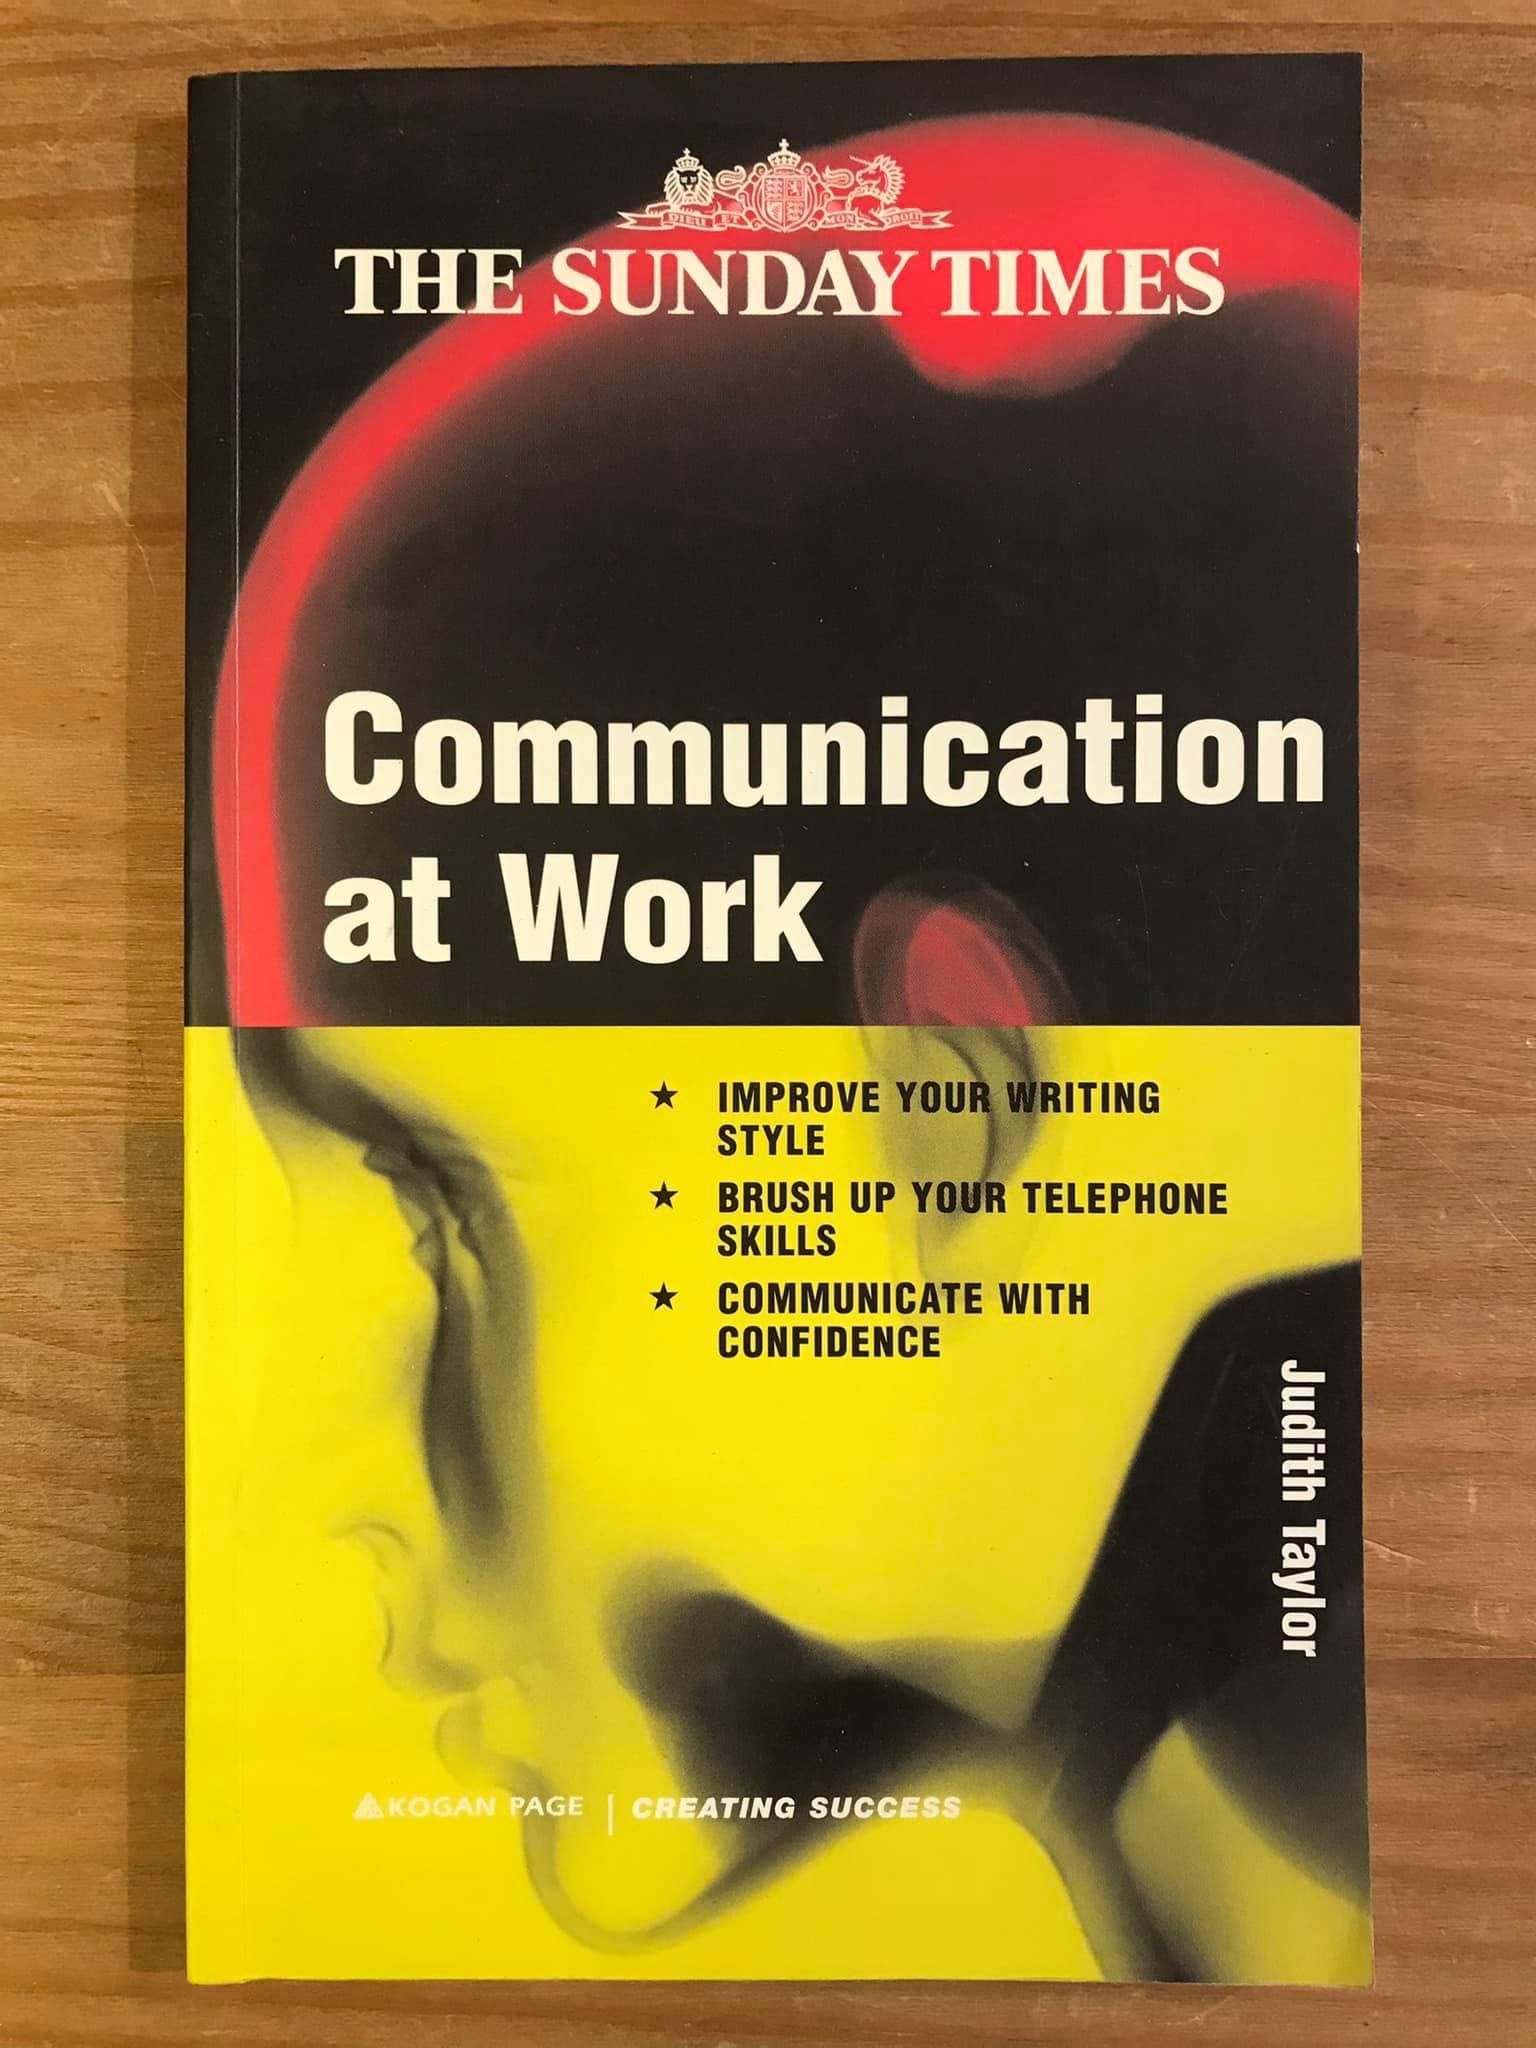 Communication at Work (portes grátis)